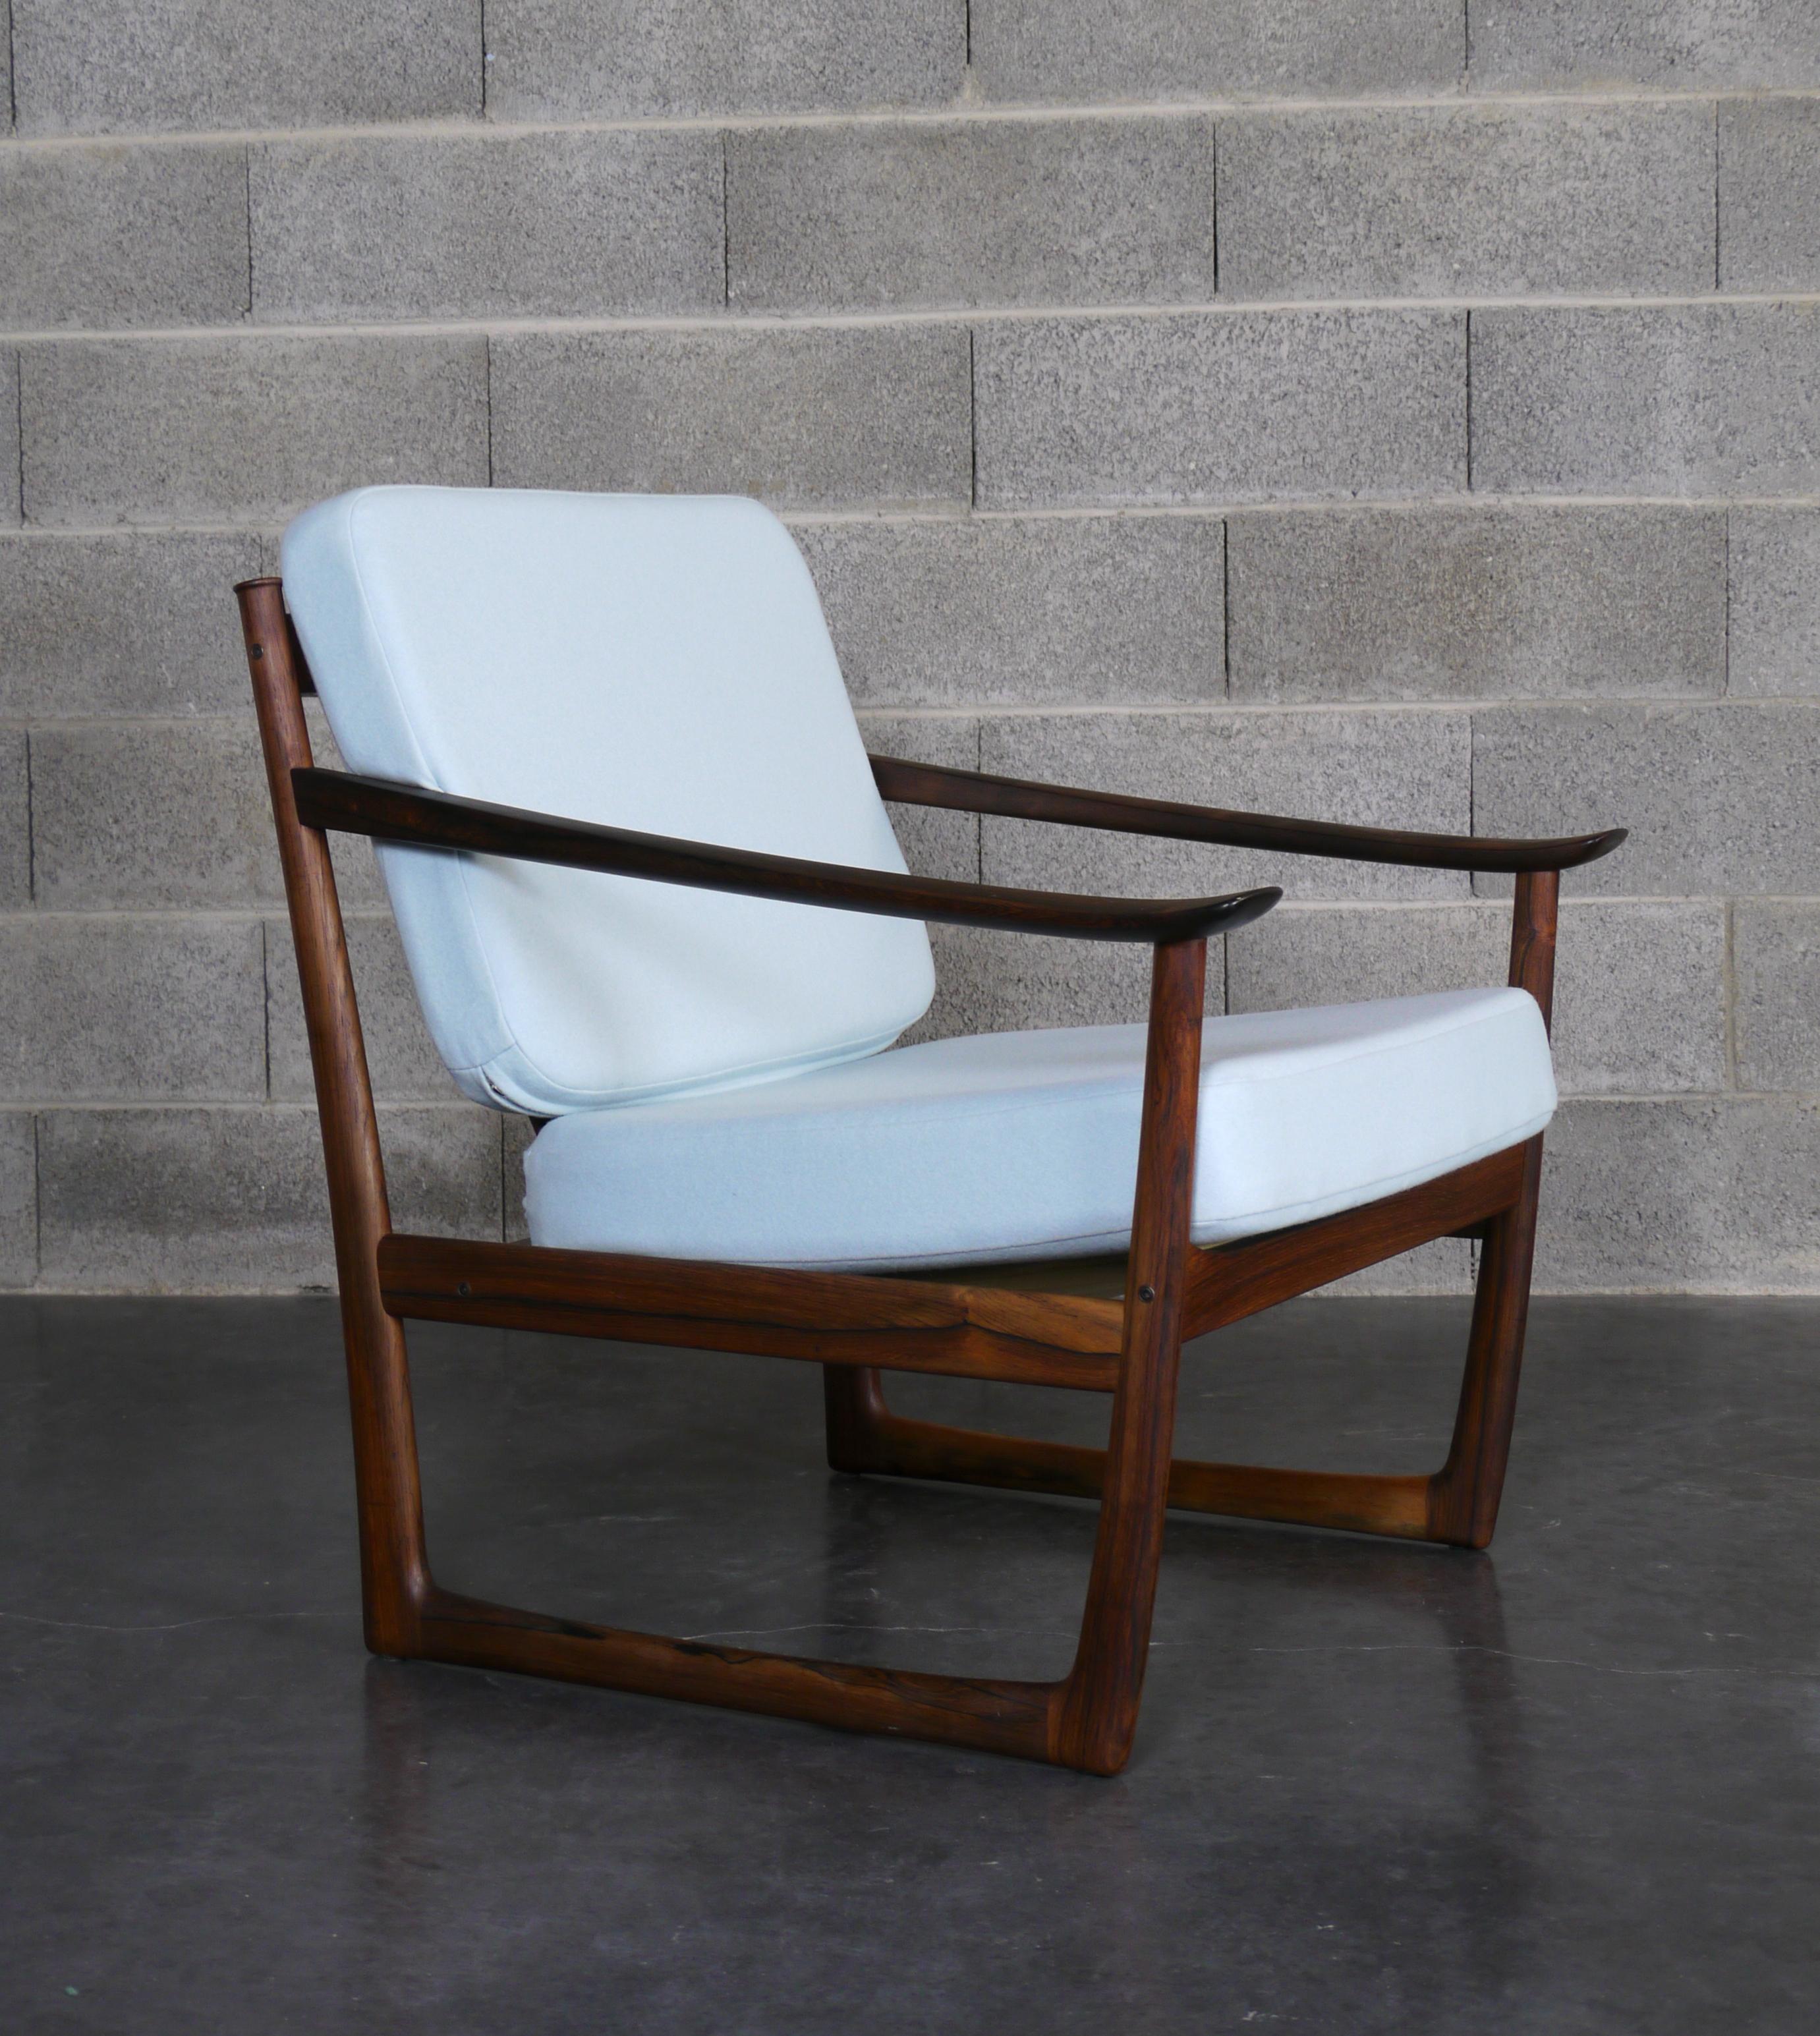 MidCentury Sessel Modell FD 130 entworfen von den dänischen Architekten Peter Hvidt & Orla Mølgaard Nielsen. Es wurde in den 1950er Jahren in Dänemark von France & Daverkosen hergestellt. Dies ist ein seltenes Stück aus massivem Palisanderholz, das